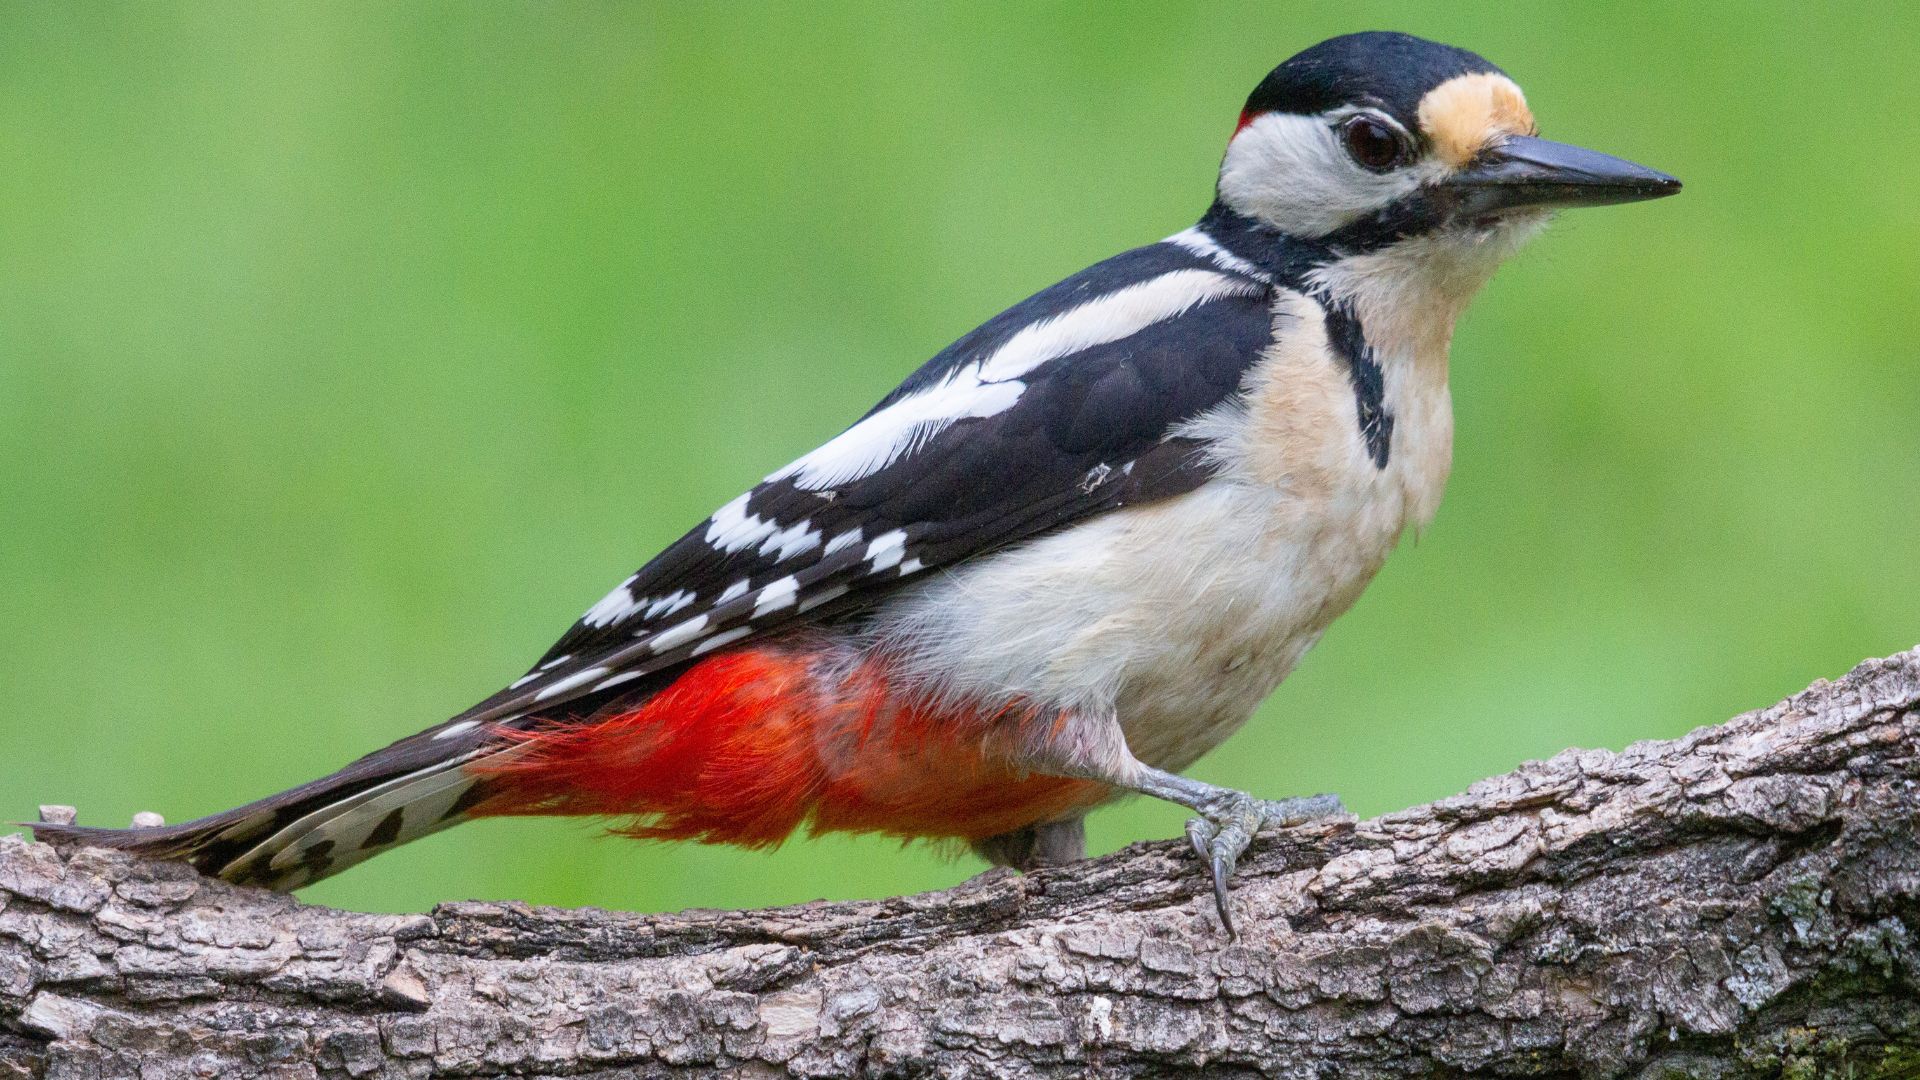 O pica-pau é uma ave comum no Brasil. É encontrado em uma variedade de habitats, incluindo florestas, matagais e parques.